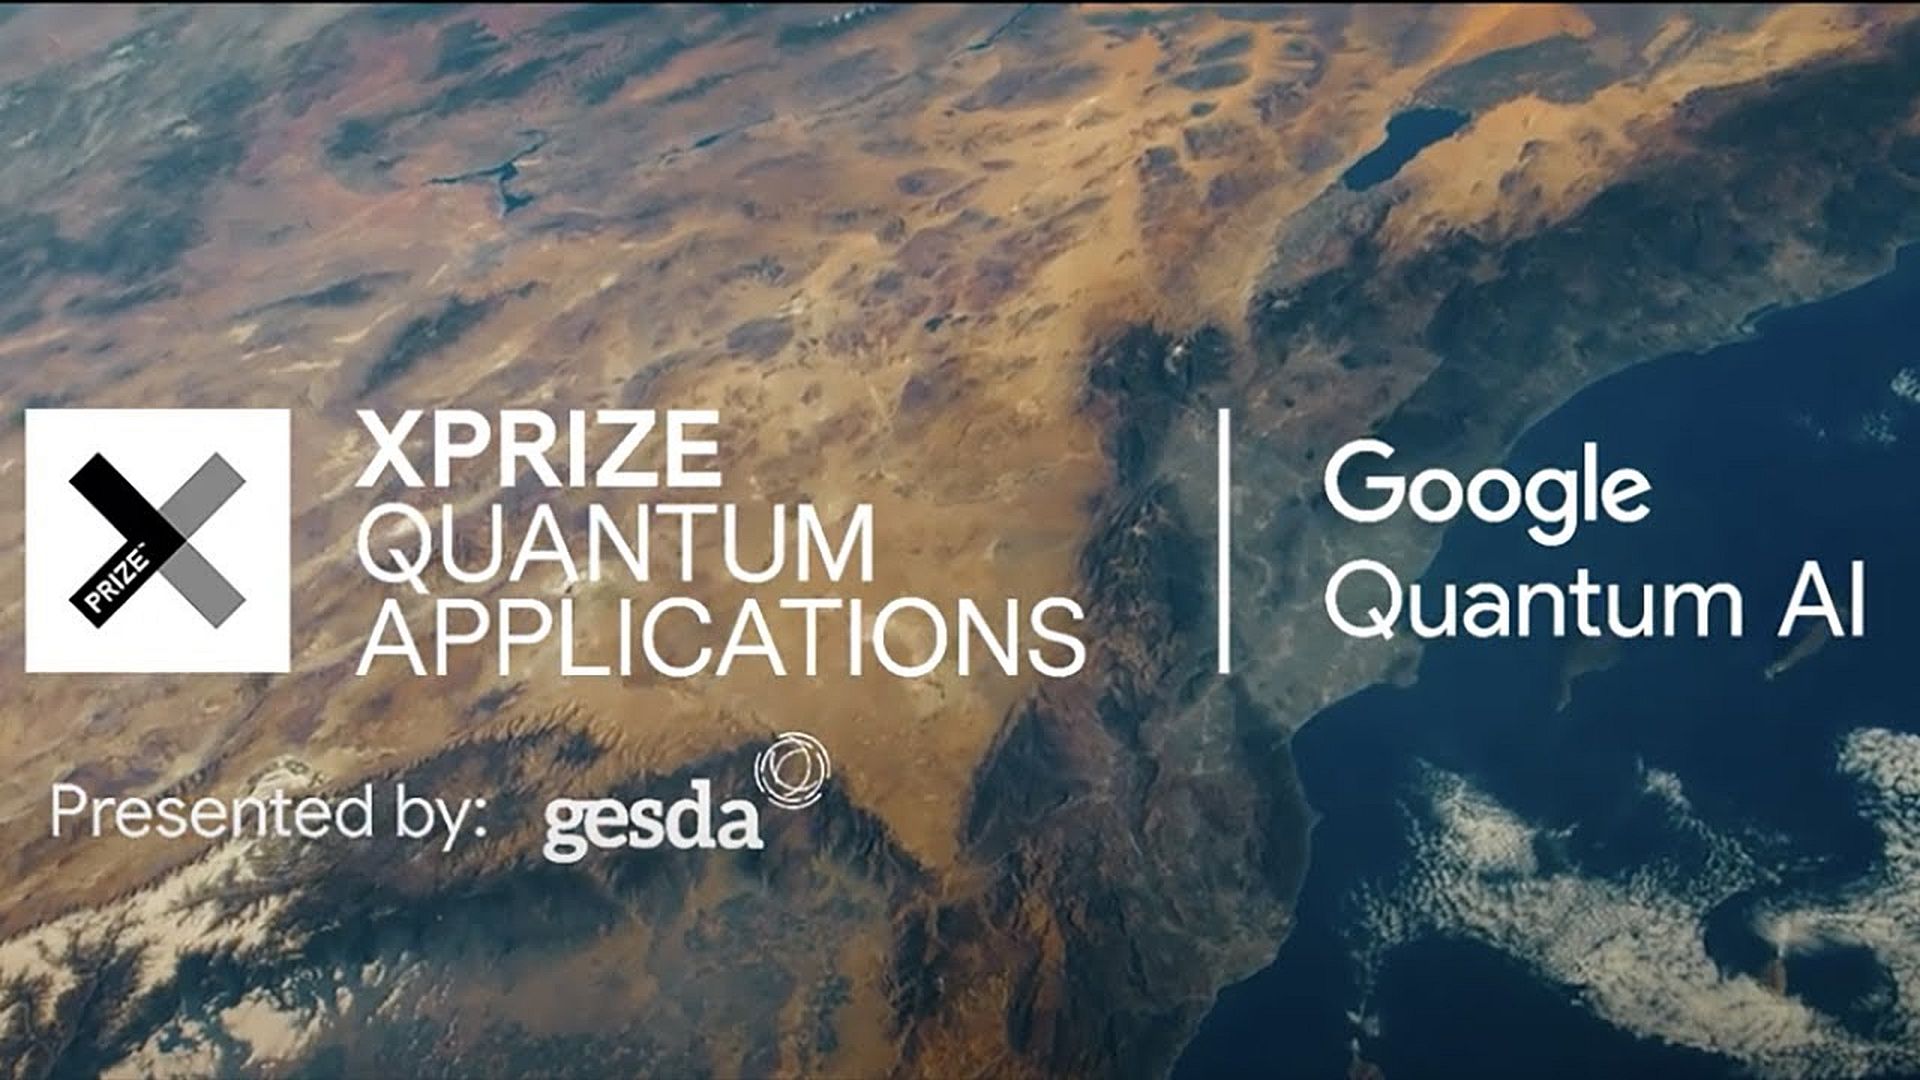 Google is bereid om 5 miljoen dollar te besteden aan het leren gebruiken van quantum computing